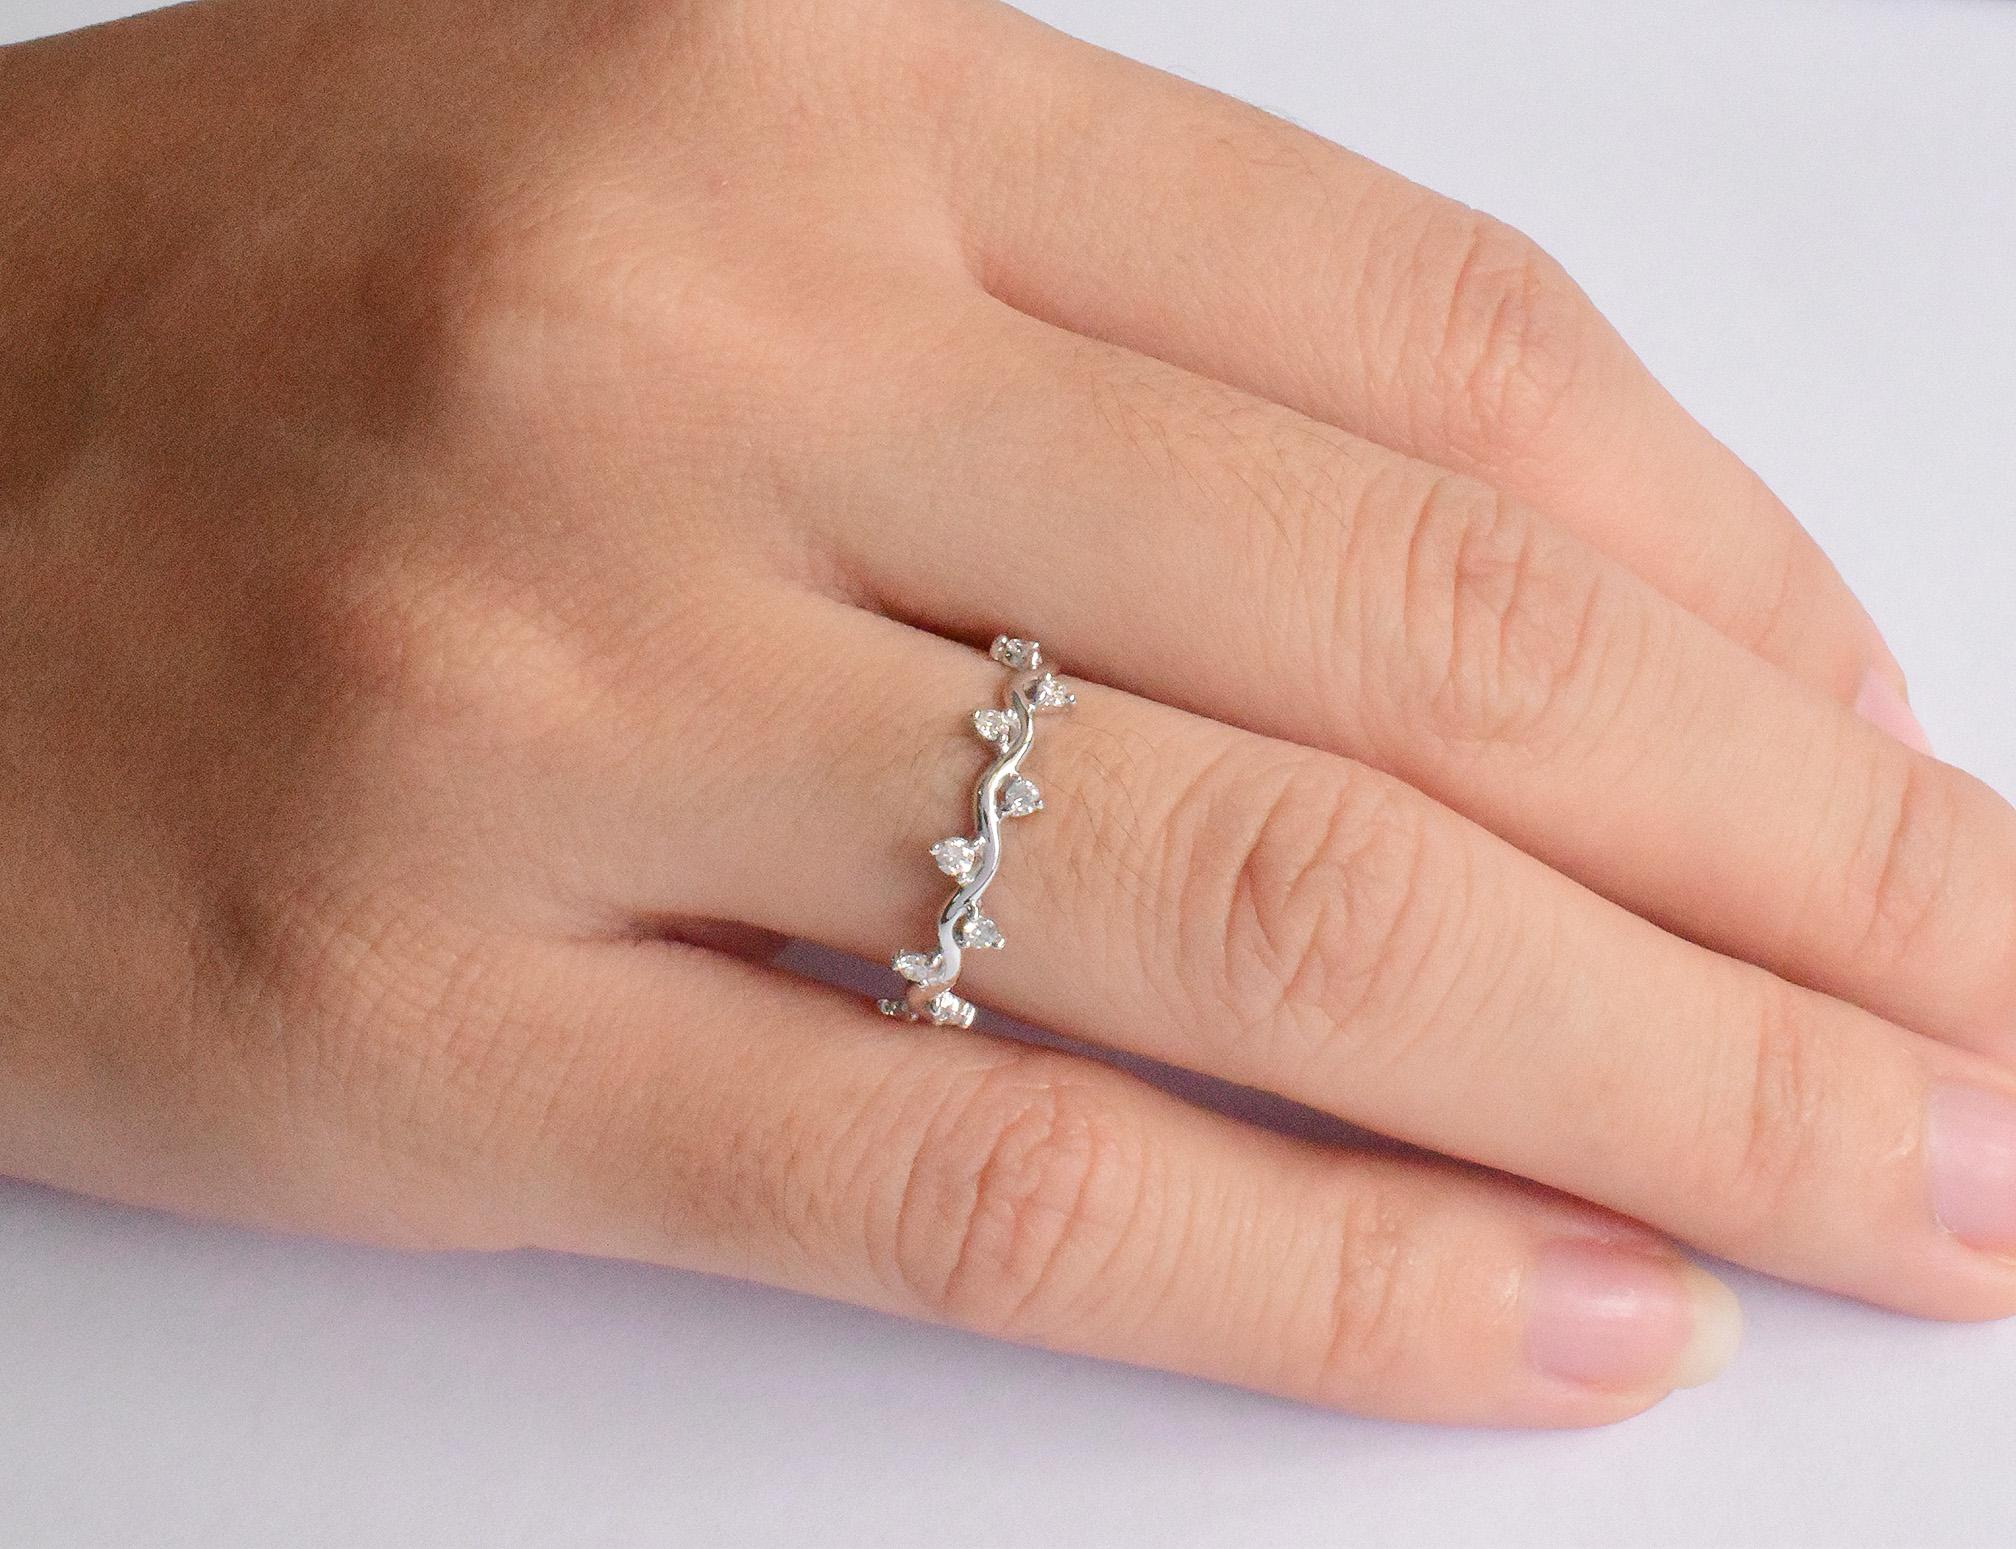 For Sale:  14k Gold Diamond Ring Cluster Diamond Ring Half Eternity Gift Ring 6